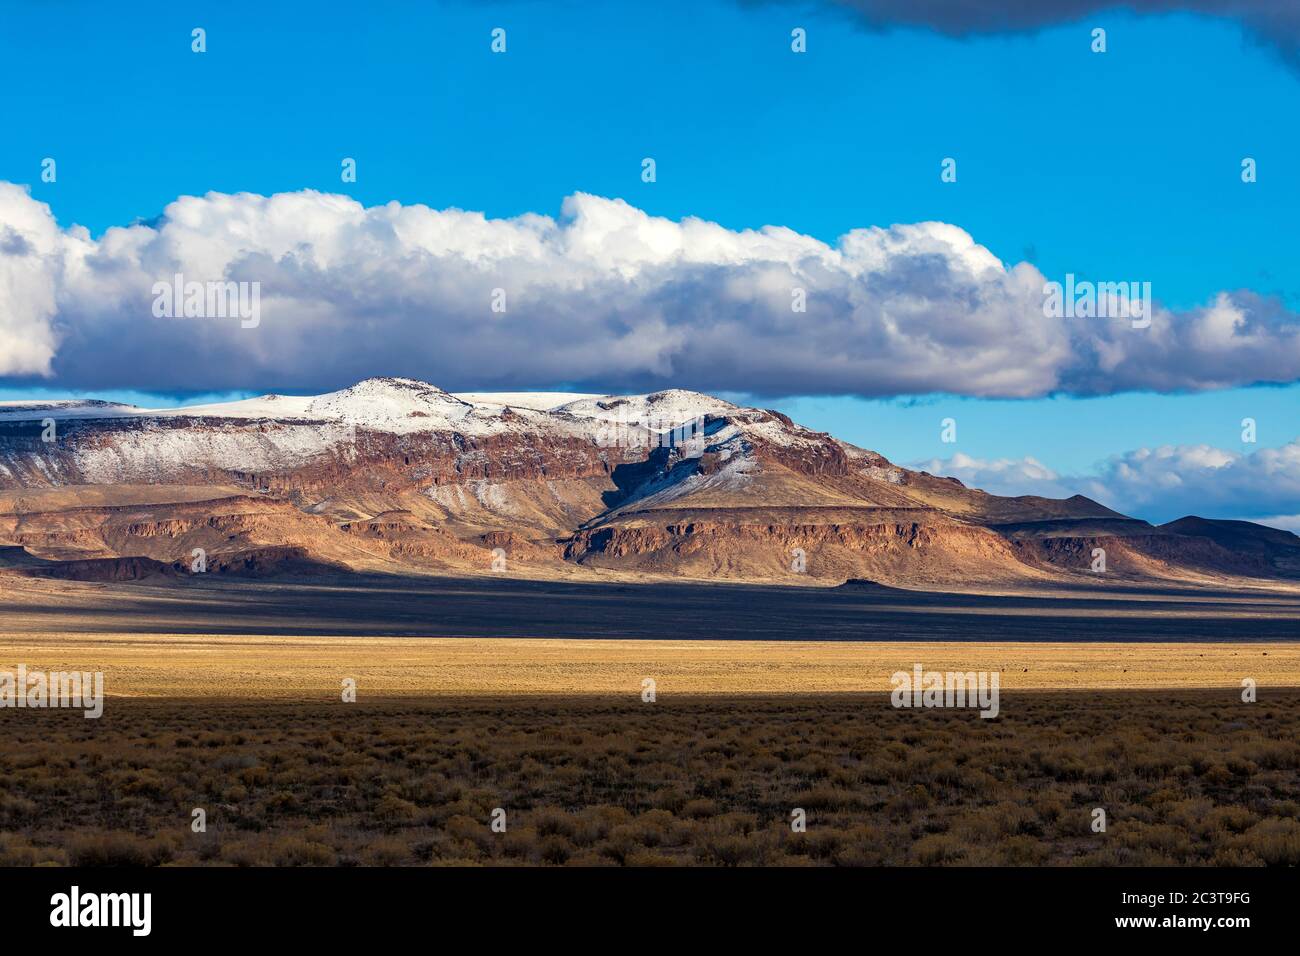 Questa è una vista della Palisade Mesa Wilderness Study Area in Nye County, Nevada, Stati Uniti con una spolverazione di neve. Foto Stock